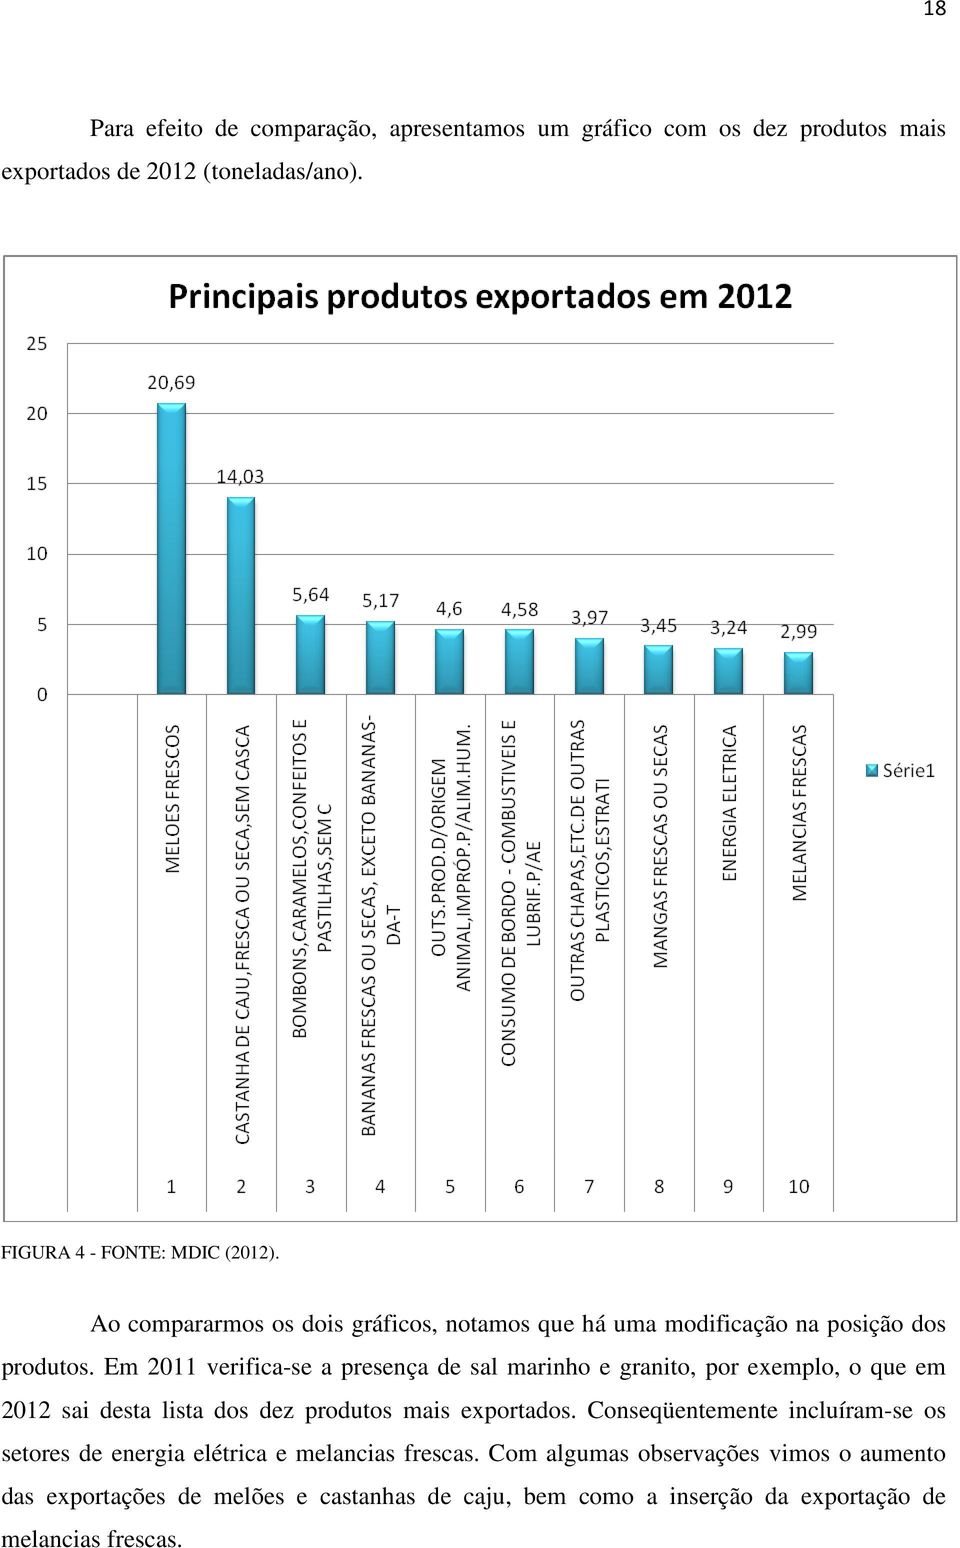 Em 2011 verifica-se a presença de sal marinho e granito, por exemplo, o que em 2012 sai desta lista dos dez produtos mais exportados.